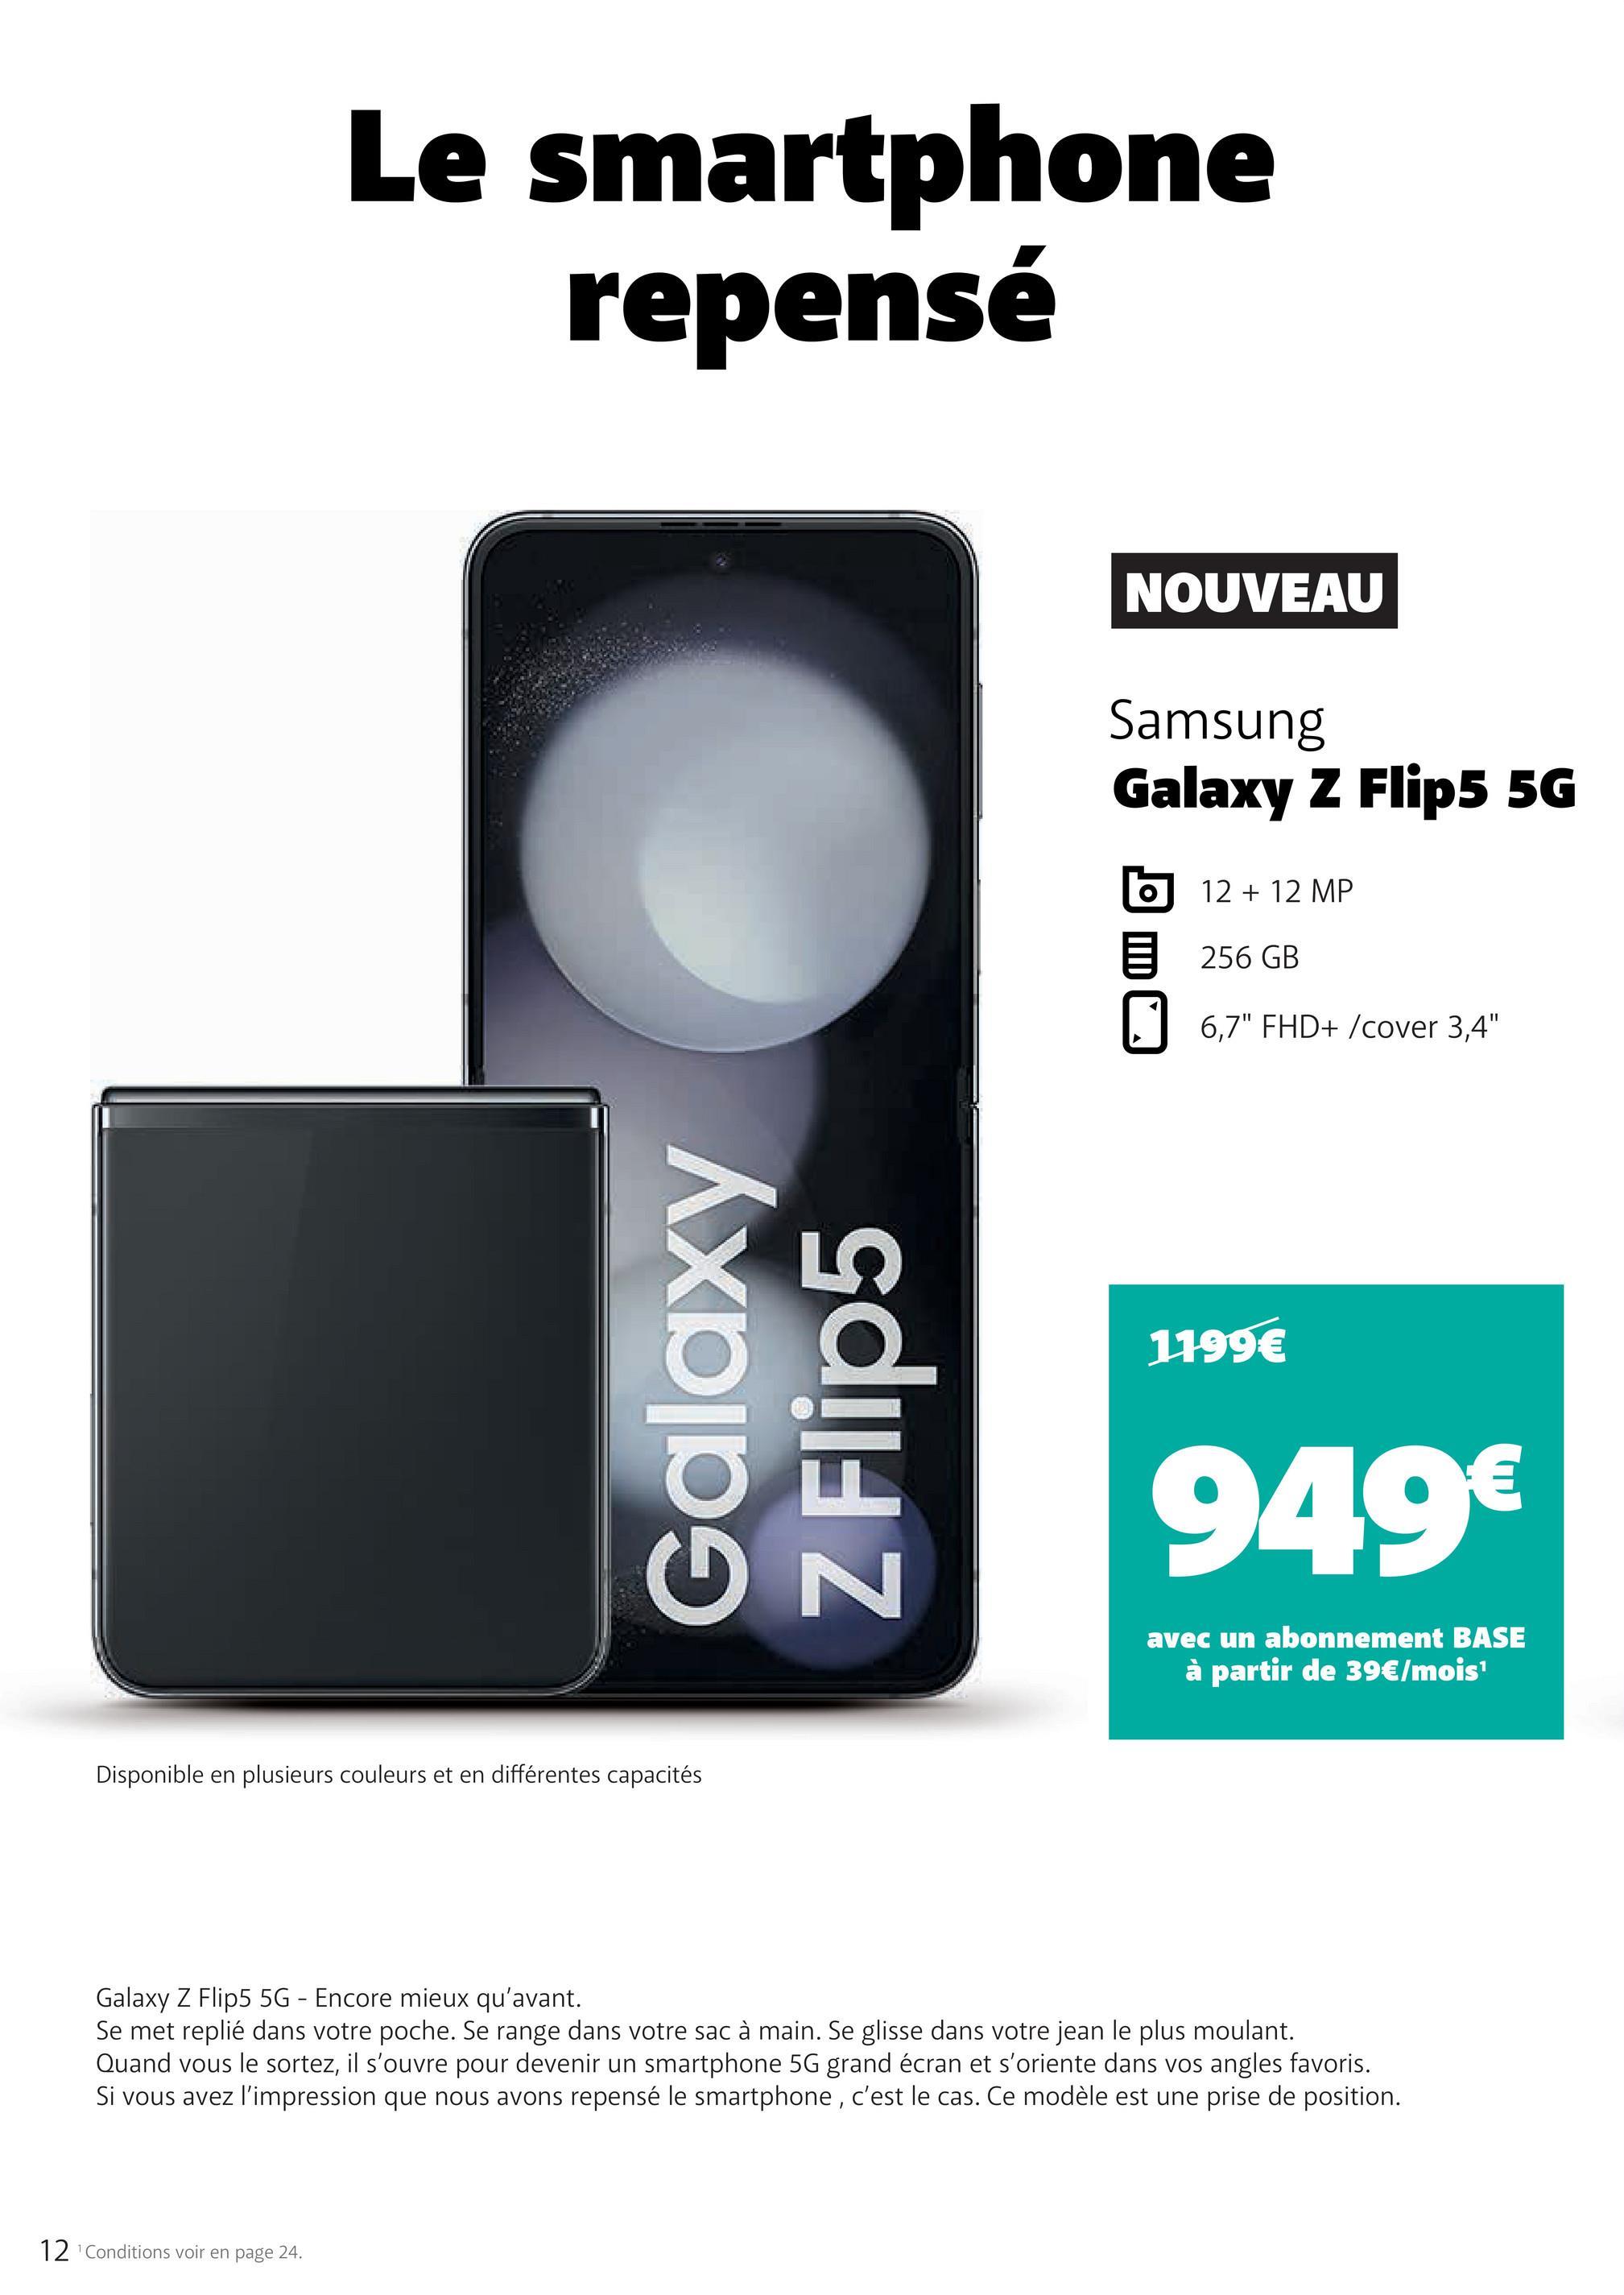 Le smartphone
repensé
Galaxy
Z Flip5
Disponible en plusieurs couleurs et en différentes capacités
12 ¹Conditions voir en page 24.
N
NOUVEAU
Samsung
Galaxy Z Flip5 5G
O
12 + 12 MP
256 GB
6,7" FHD+ /cover 3,4"
1199€
949€
avec un abonnement BASE
à partir de 39€/mois¹
Galaxy Z Flip5 5G - Encore mieux qu'avant.
Se met replié dans votre poche. Se range dans votre sac à main. Se glisse dans votre jean le plus moulant.
Quand vous le sortez, il s'ouvre pour devenir un smartphone 5G grand écran et s'oriente dans vos angles favoris.
Si vous avez l'impression que nous avons repensé le smartphone, c'est le cas. Ce modèle est une prise de position.